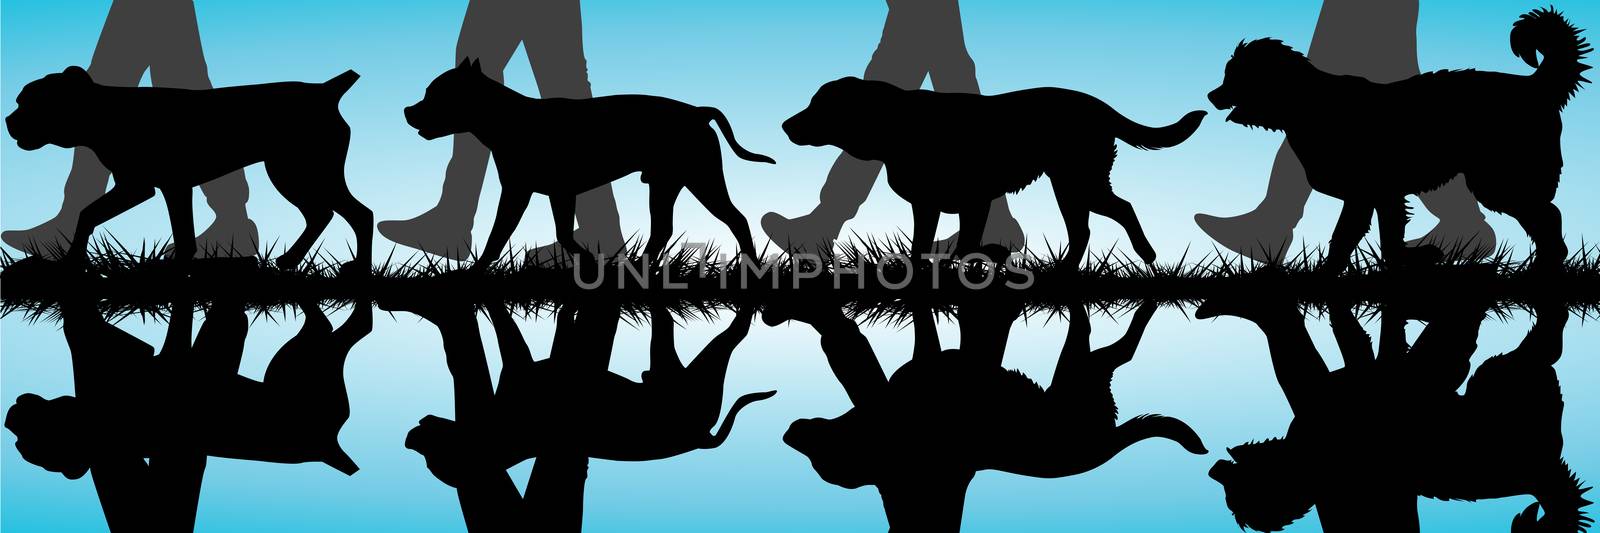 Amstaff, Presa Canario, Labrador and Caucasian Shepherd silhouet by hibrida13